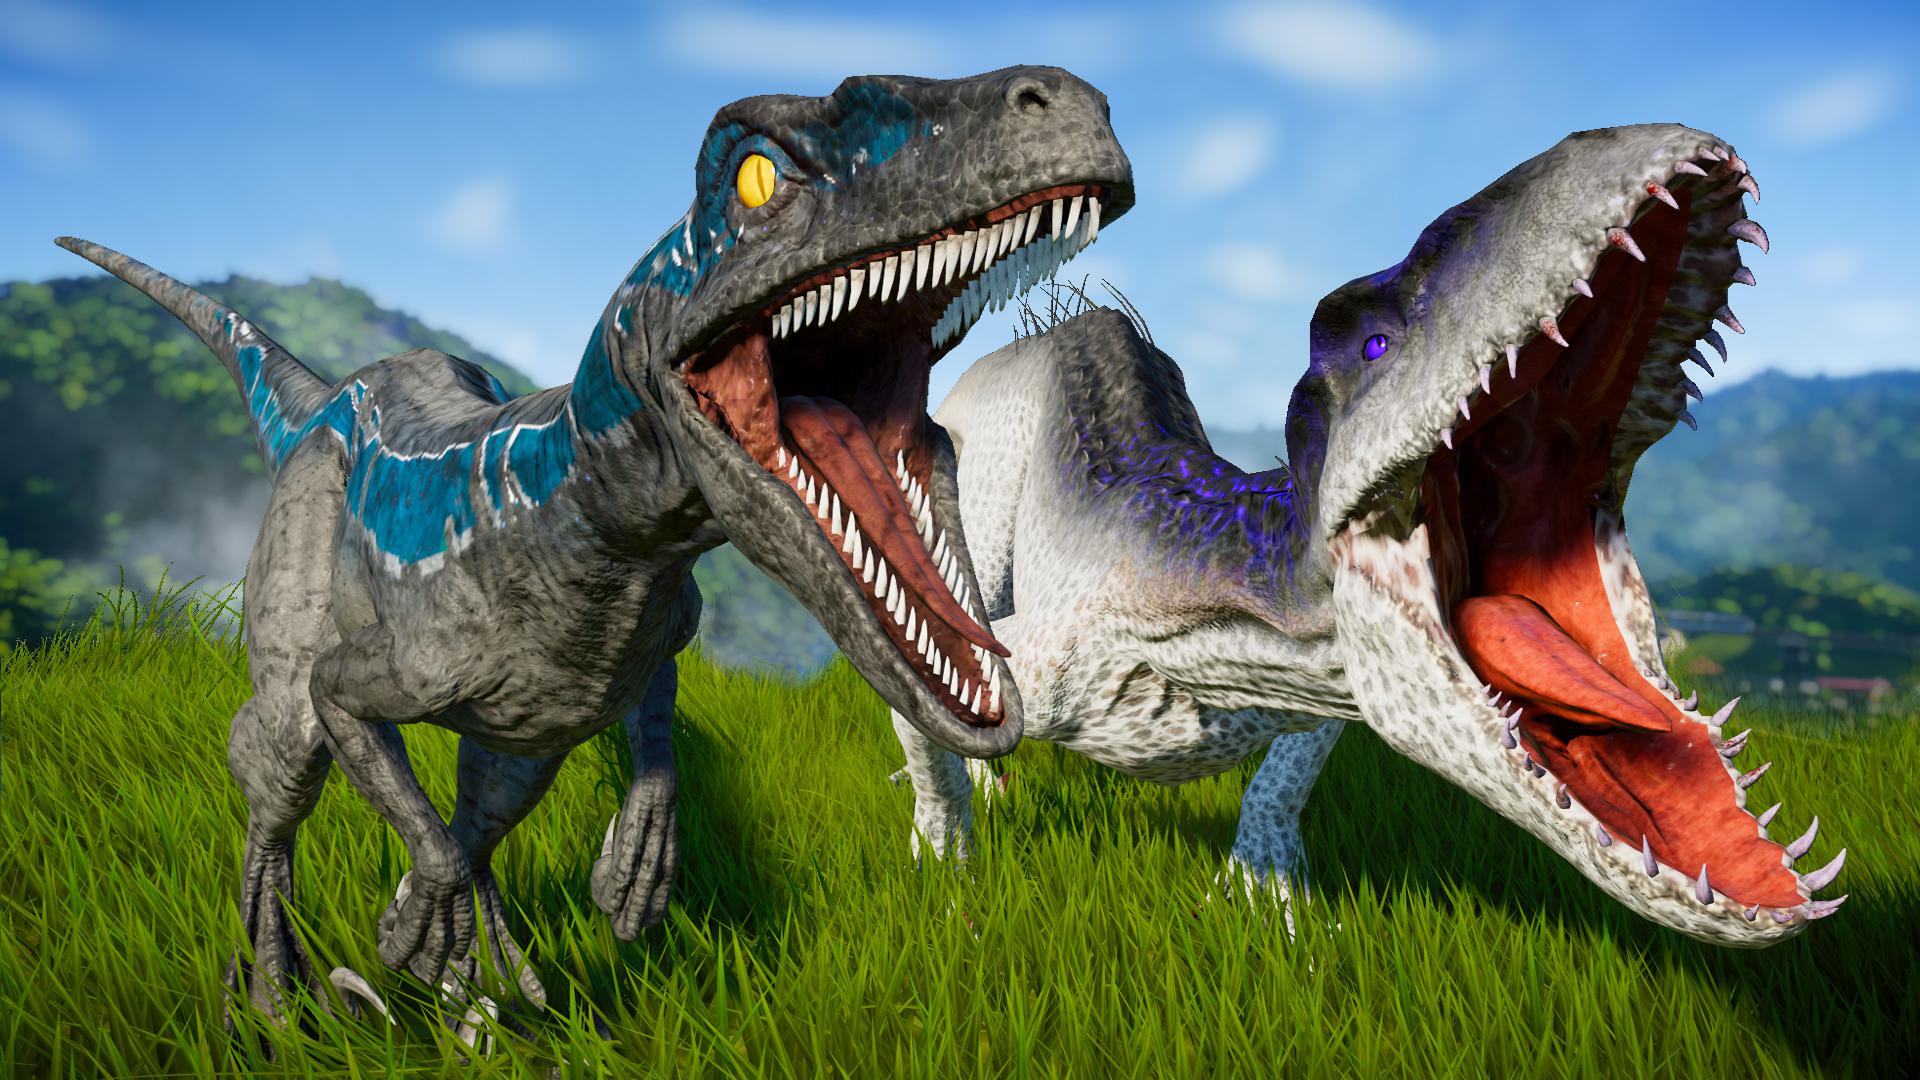 Blue Velociraptor vs Indoraptor Fight scene